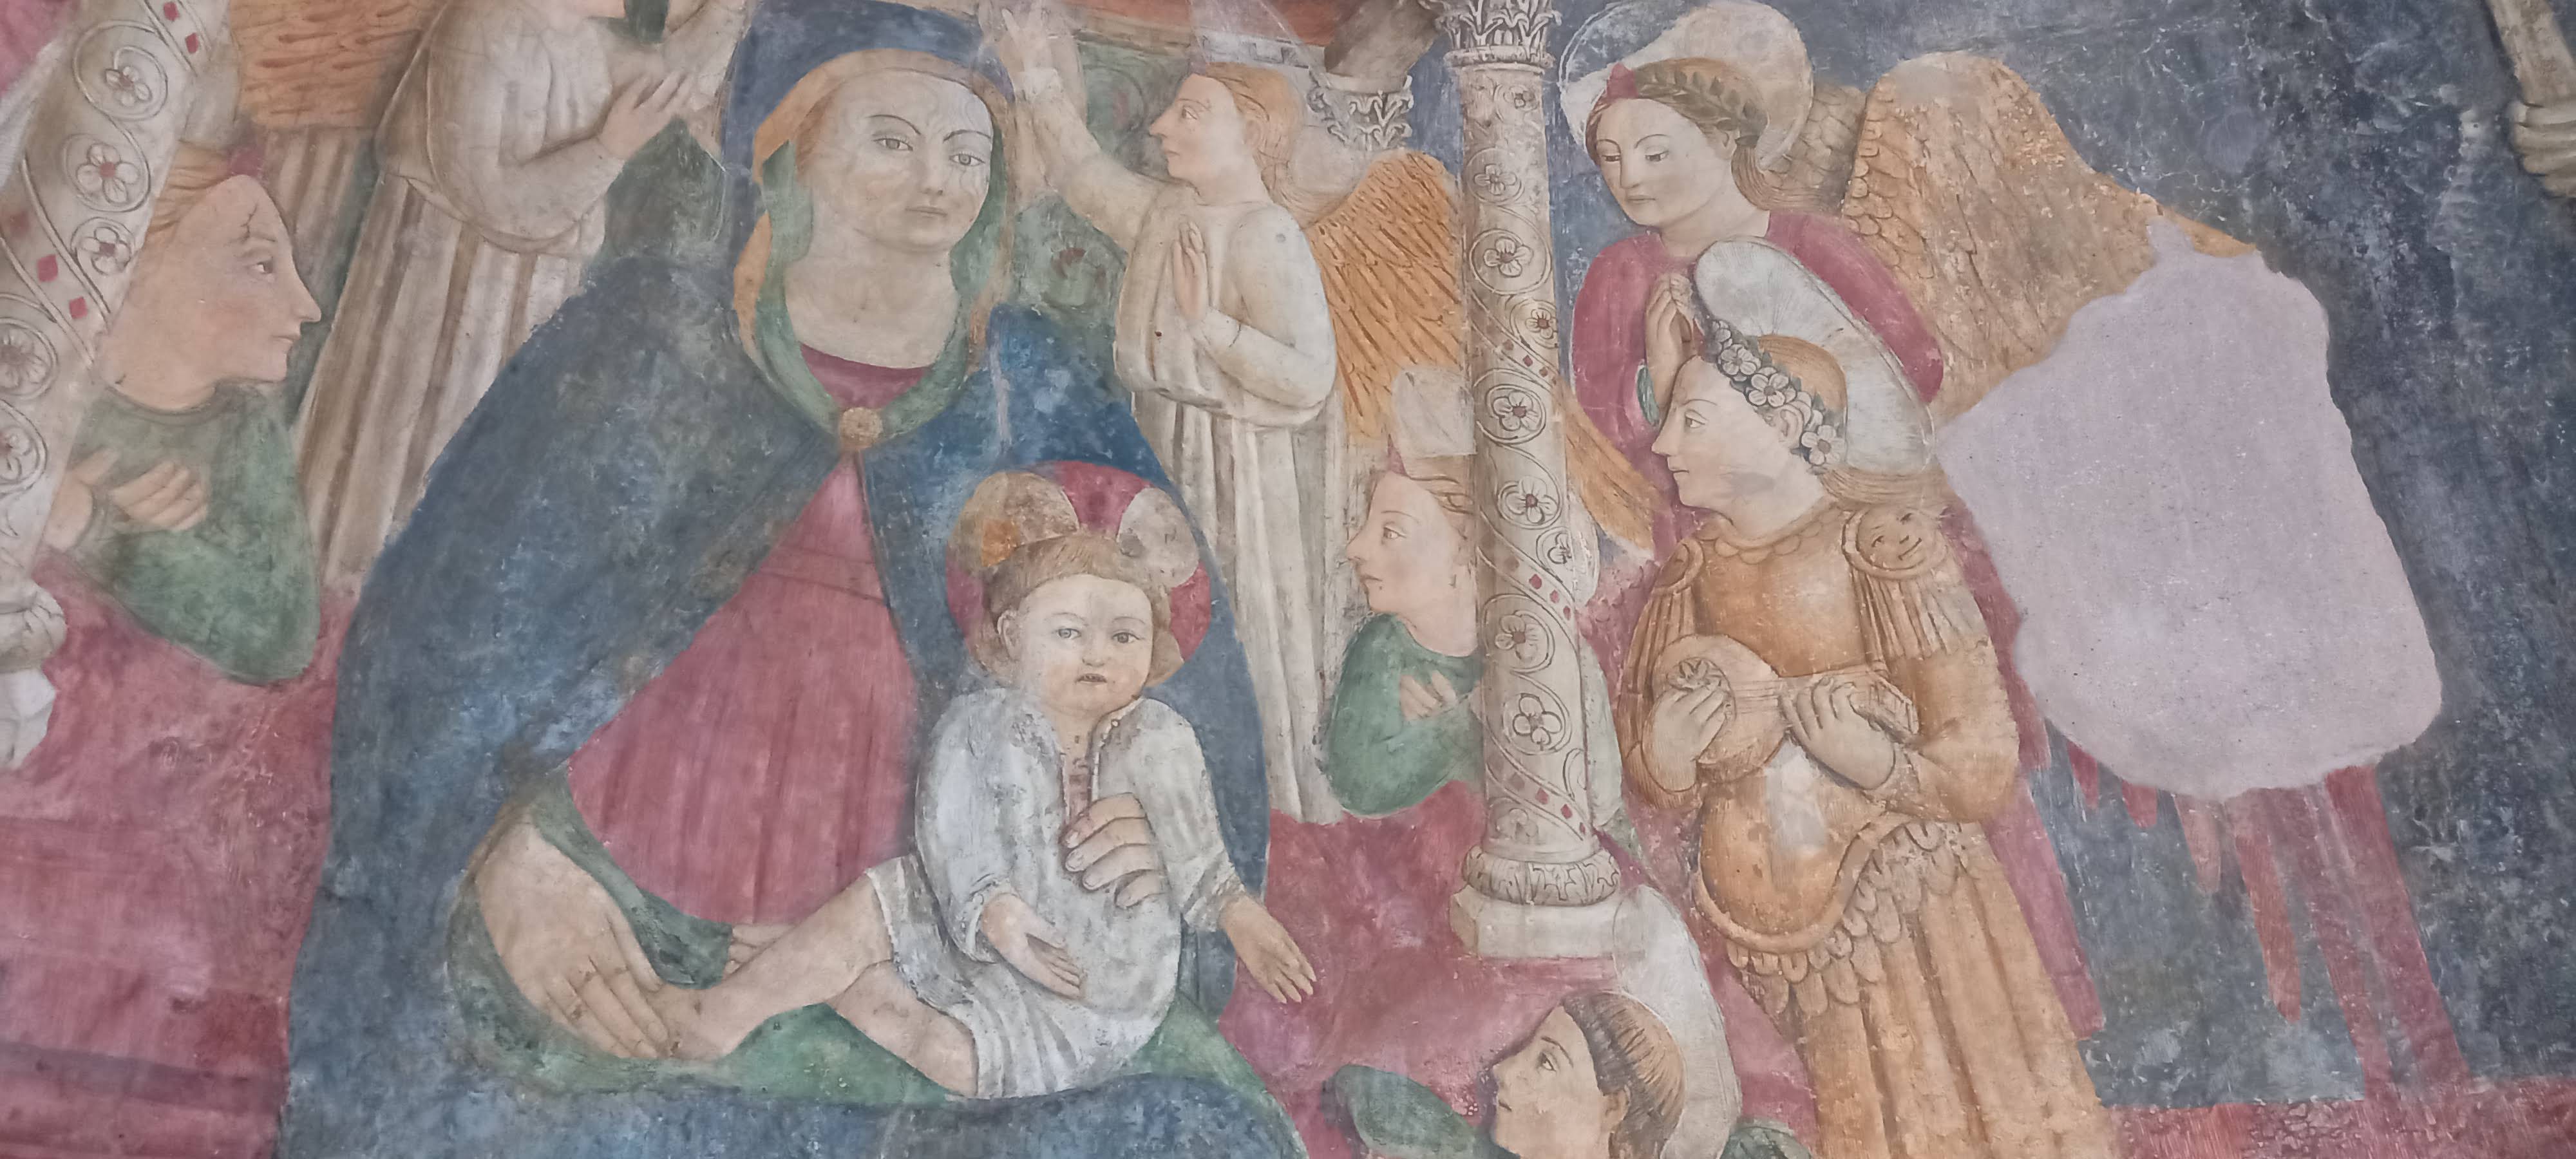 Madonna con bambino in trono, part. affresco quattrocentesco all'interno della Chiesa di Santa Maria a Castro, Monte S.Angelo, tre Pizzi, Costiera amalfitana.